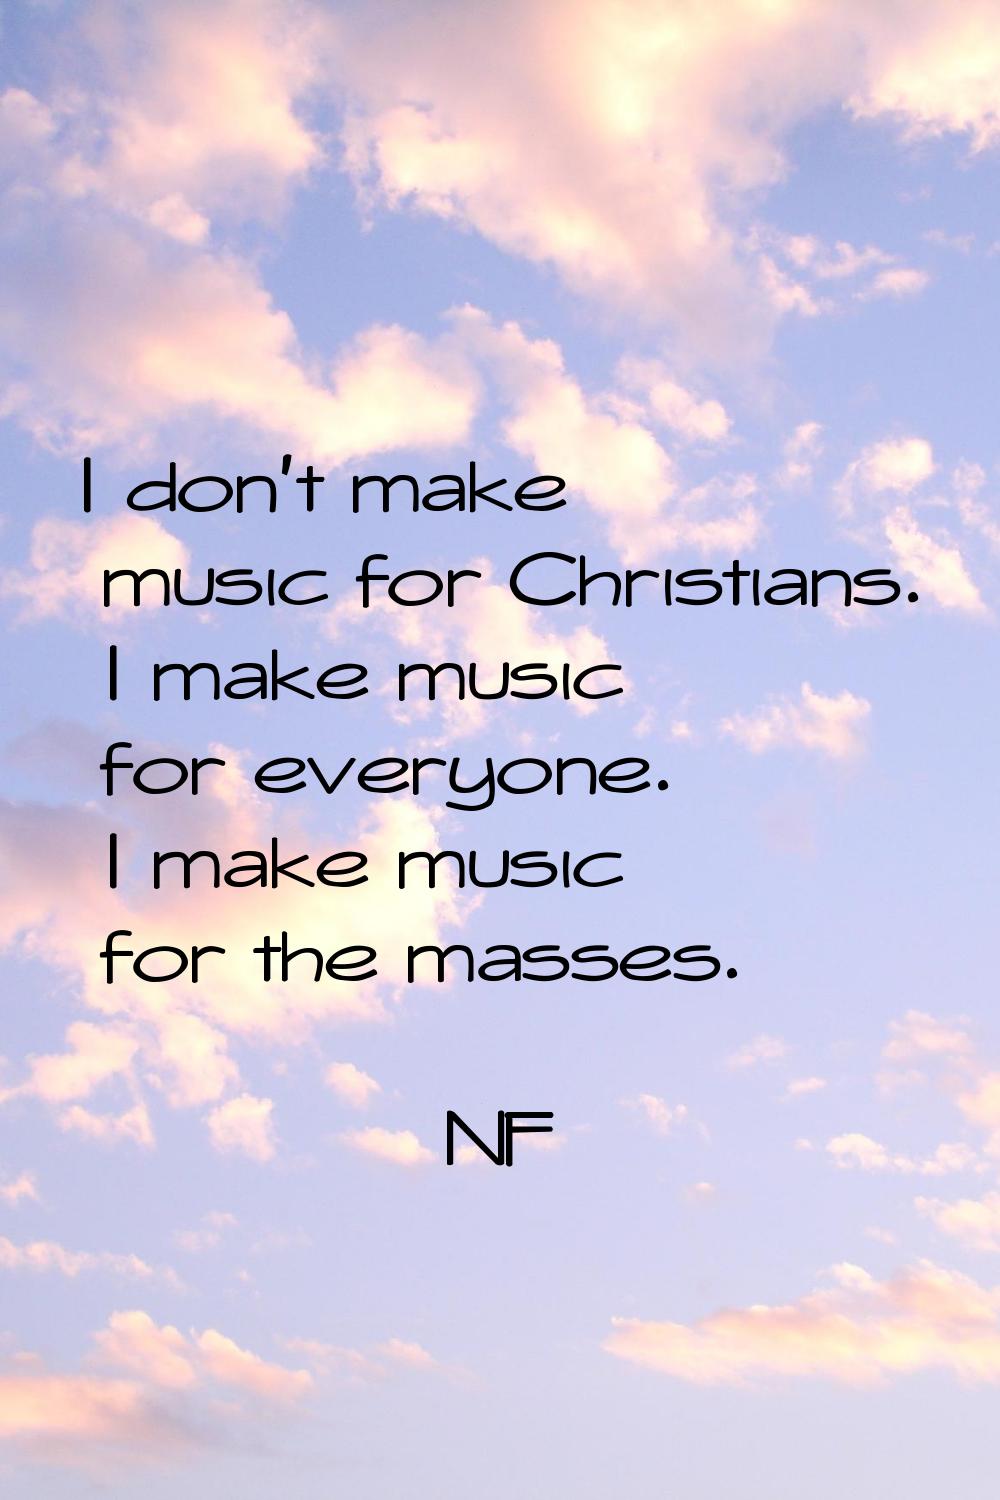 I don't make music for Christians. I make music for everyone. I make music for the masses.